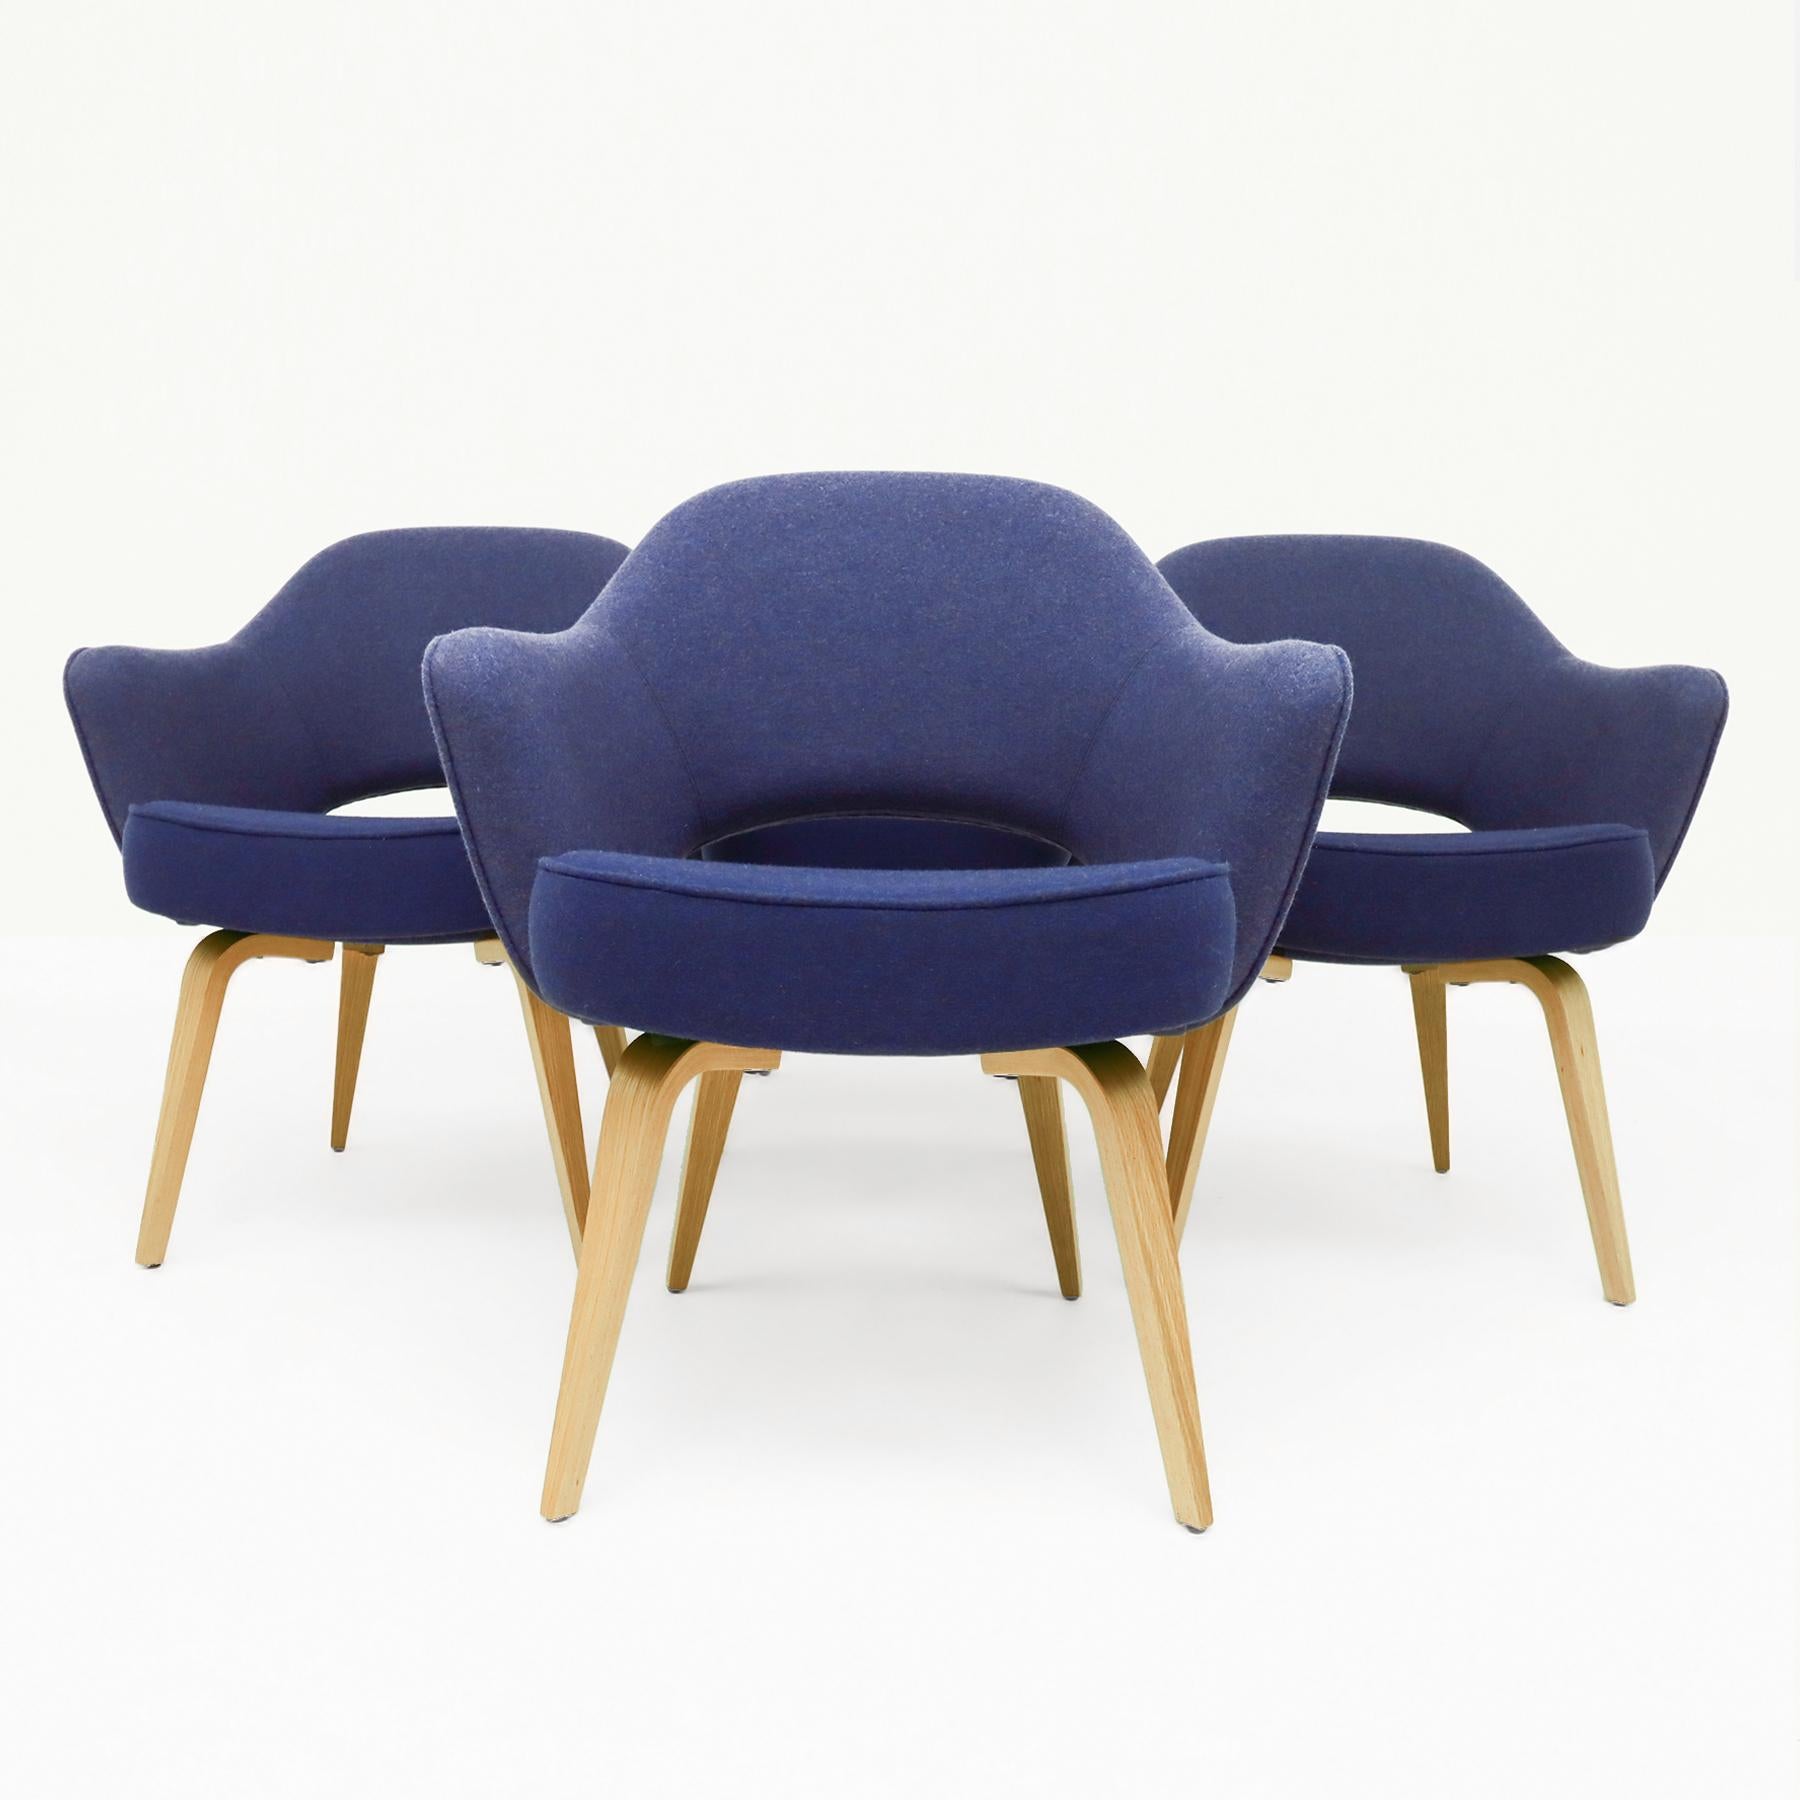 Ein klassisches Set von 4 Vintage-Sesseln von Eero Saarininen Knoll Inc. mit blauem Originalstoff von Knoll und einem Gestell aus Eichenholz.

Der Eero Saarinen Executive Sessel war in den 1950er Jahren und darüber hinaus in fast jeder Florence